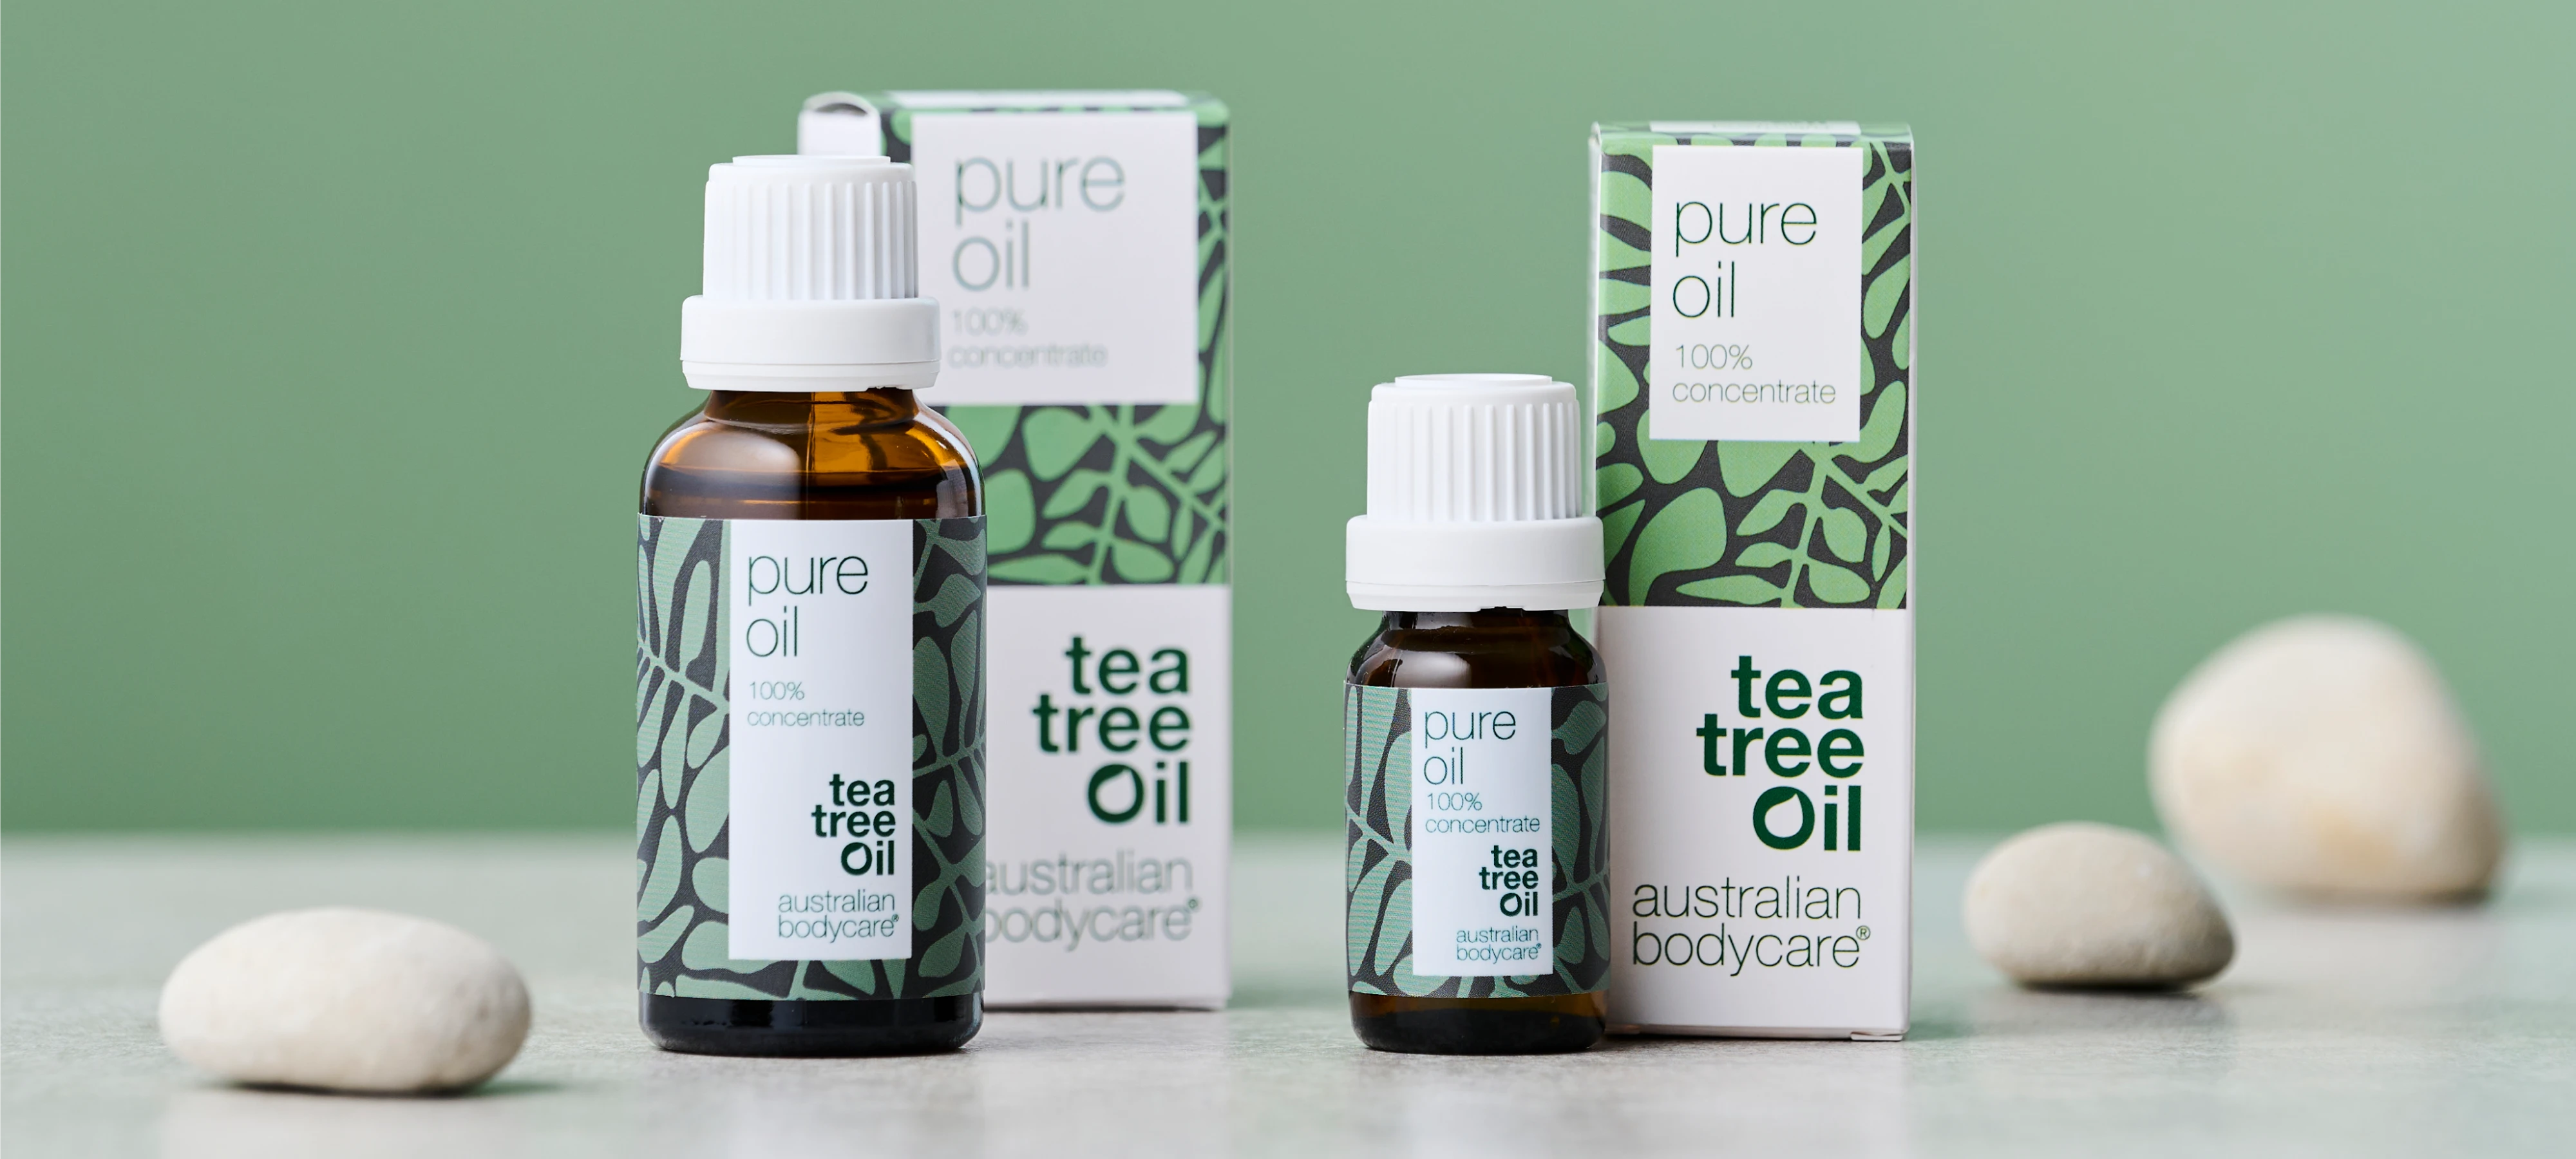 Tea Tree Oil from Australian Bodycare